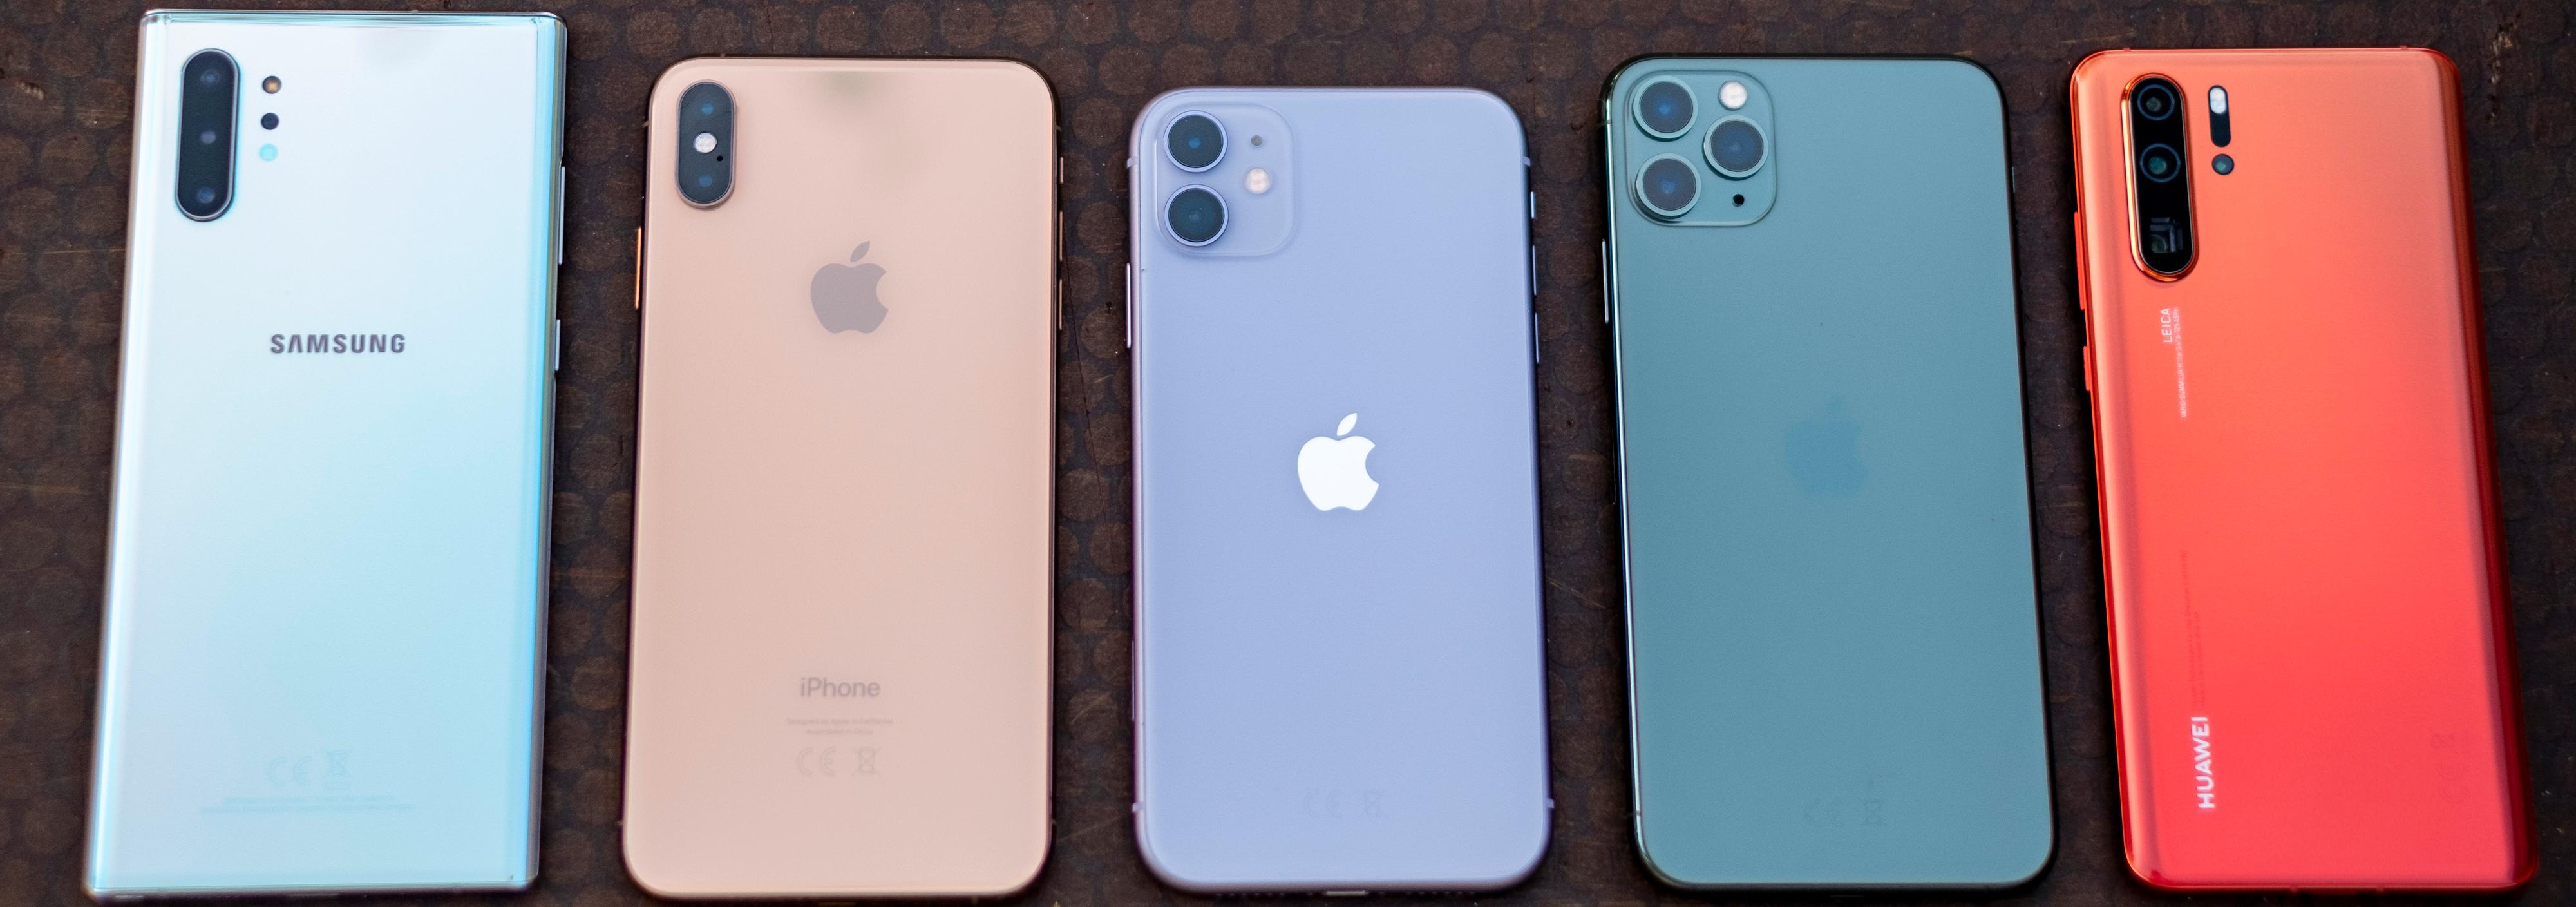 Vi tok med oss tre iPhoner og to konkurrenter ut for å fotografere. Fra venstre: Samsung Galaxy Note 10+, Apple iPhone Xs Max, iPhone 11, iPhone 11 Pro Max og Huawei P30 Pro.